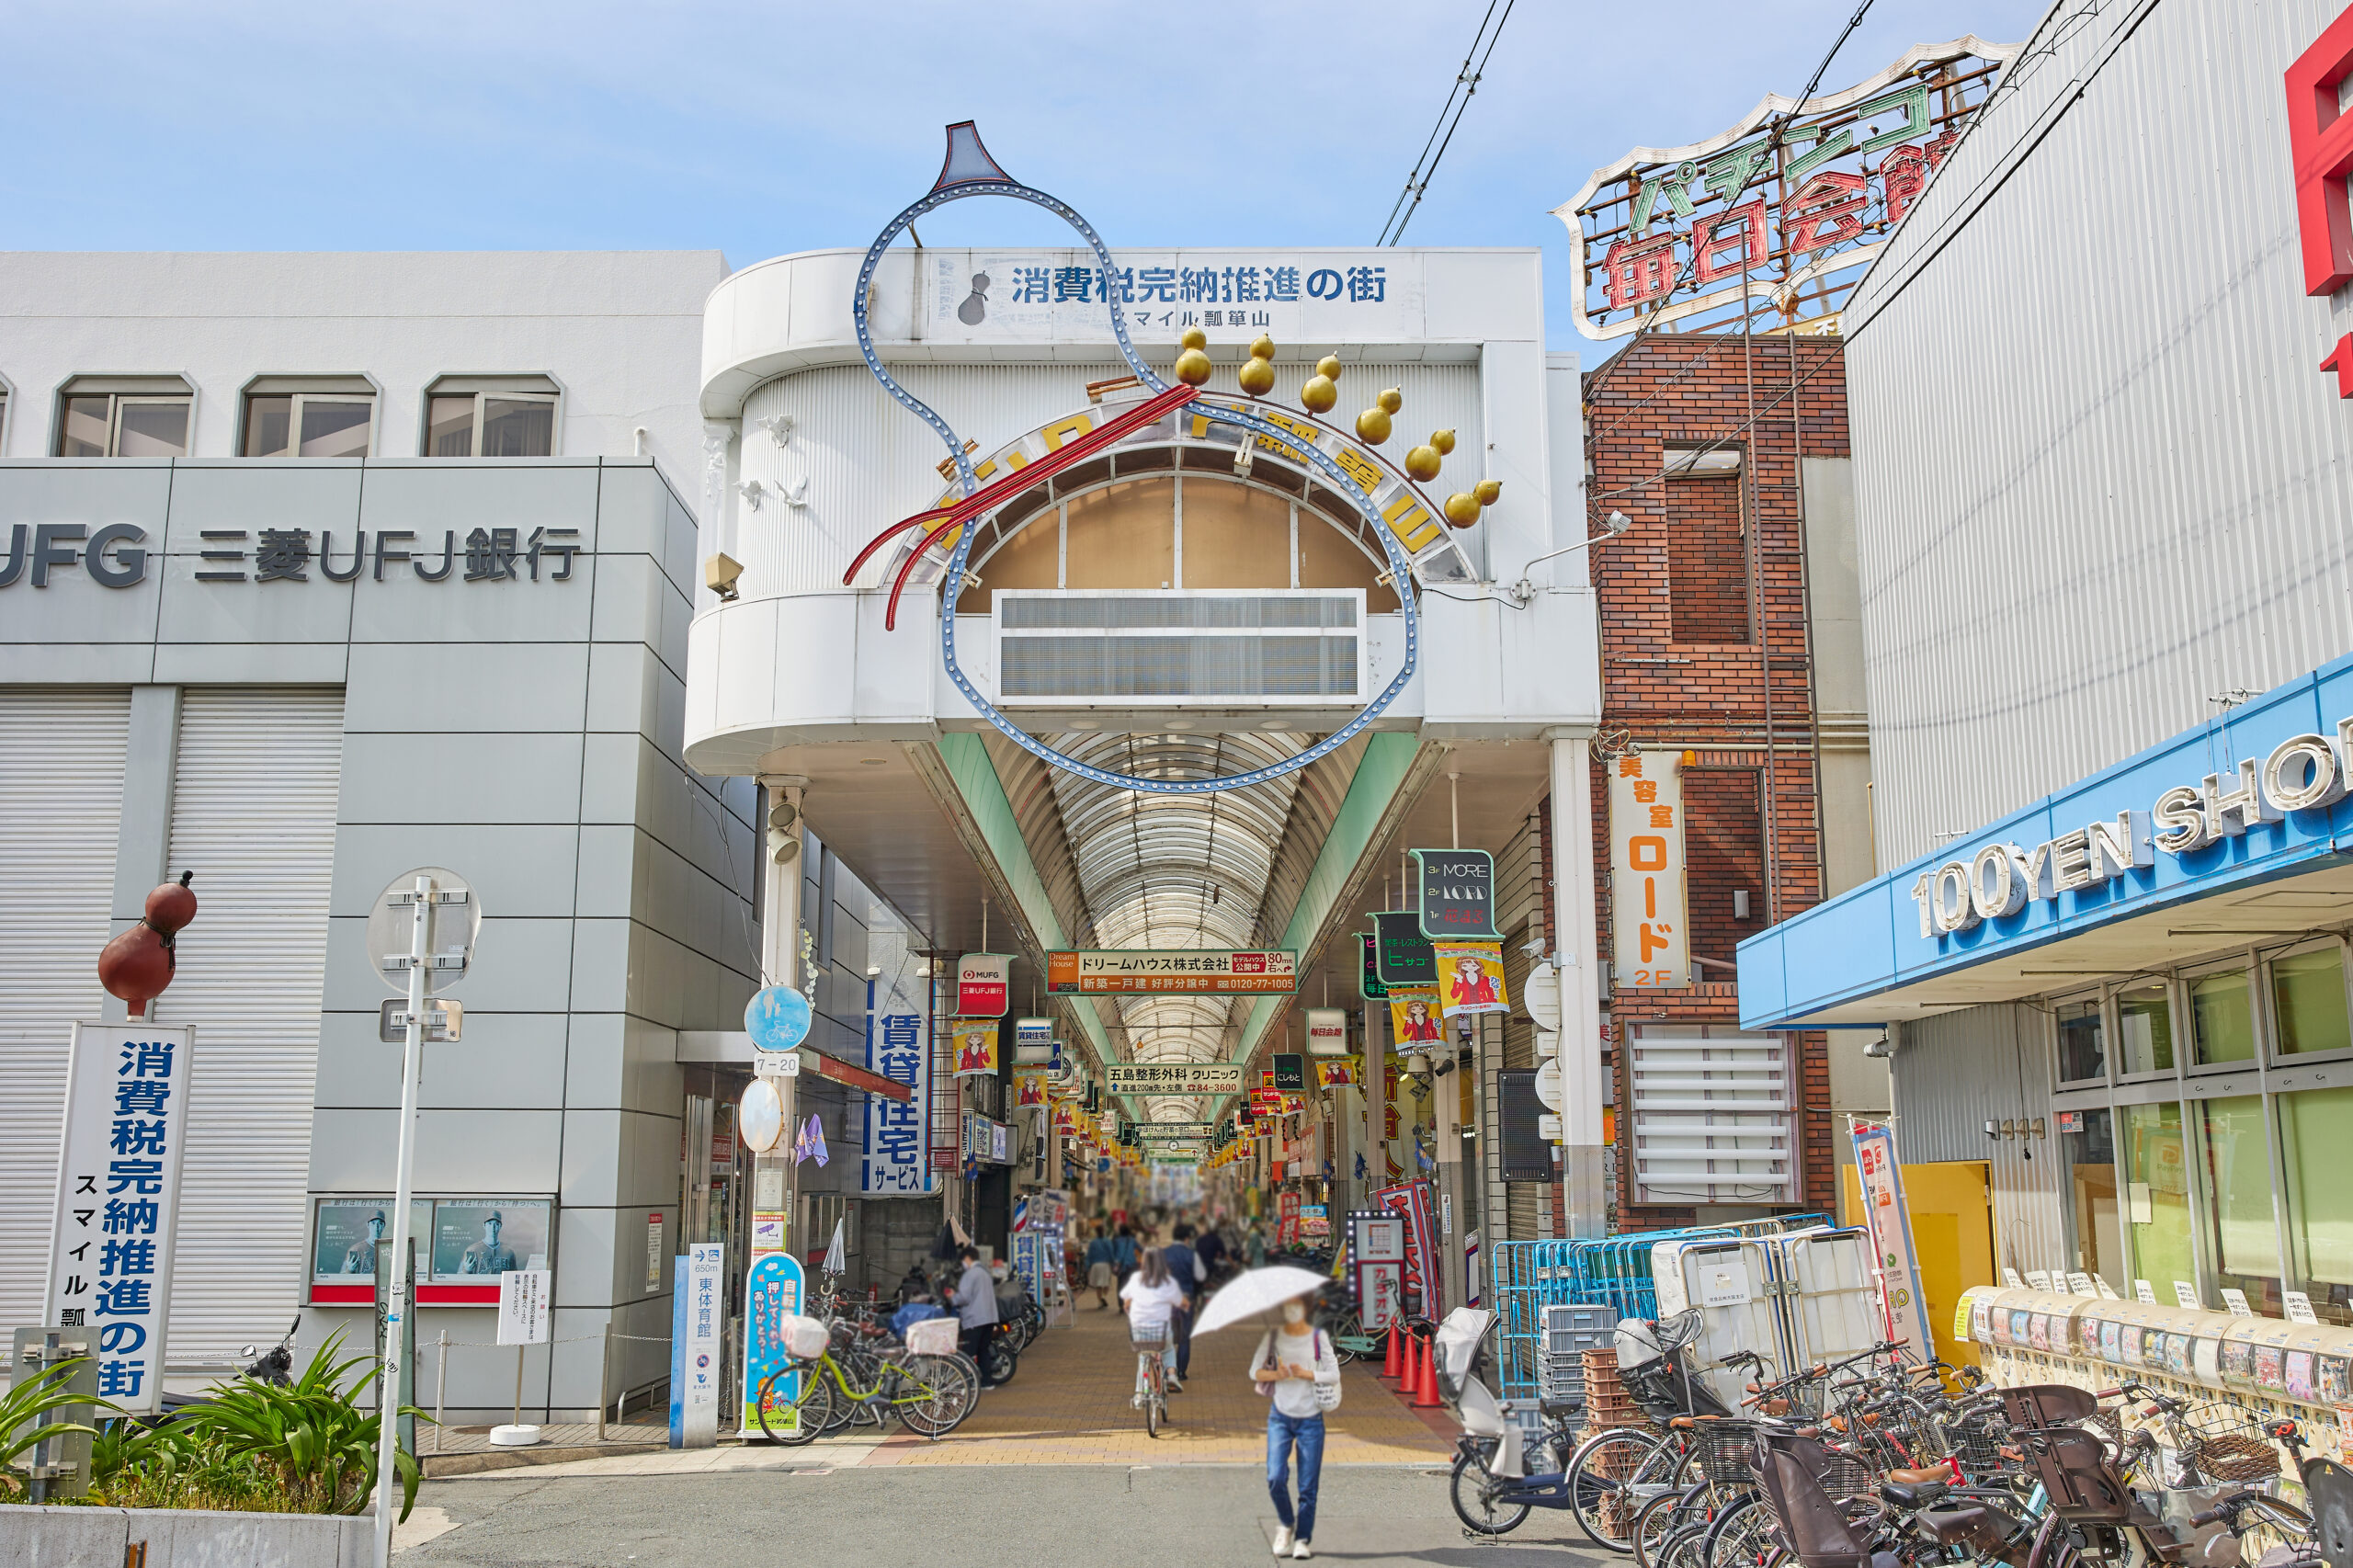 瓢箪山中央商店街